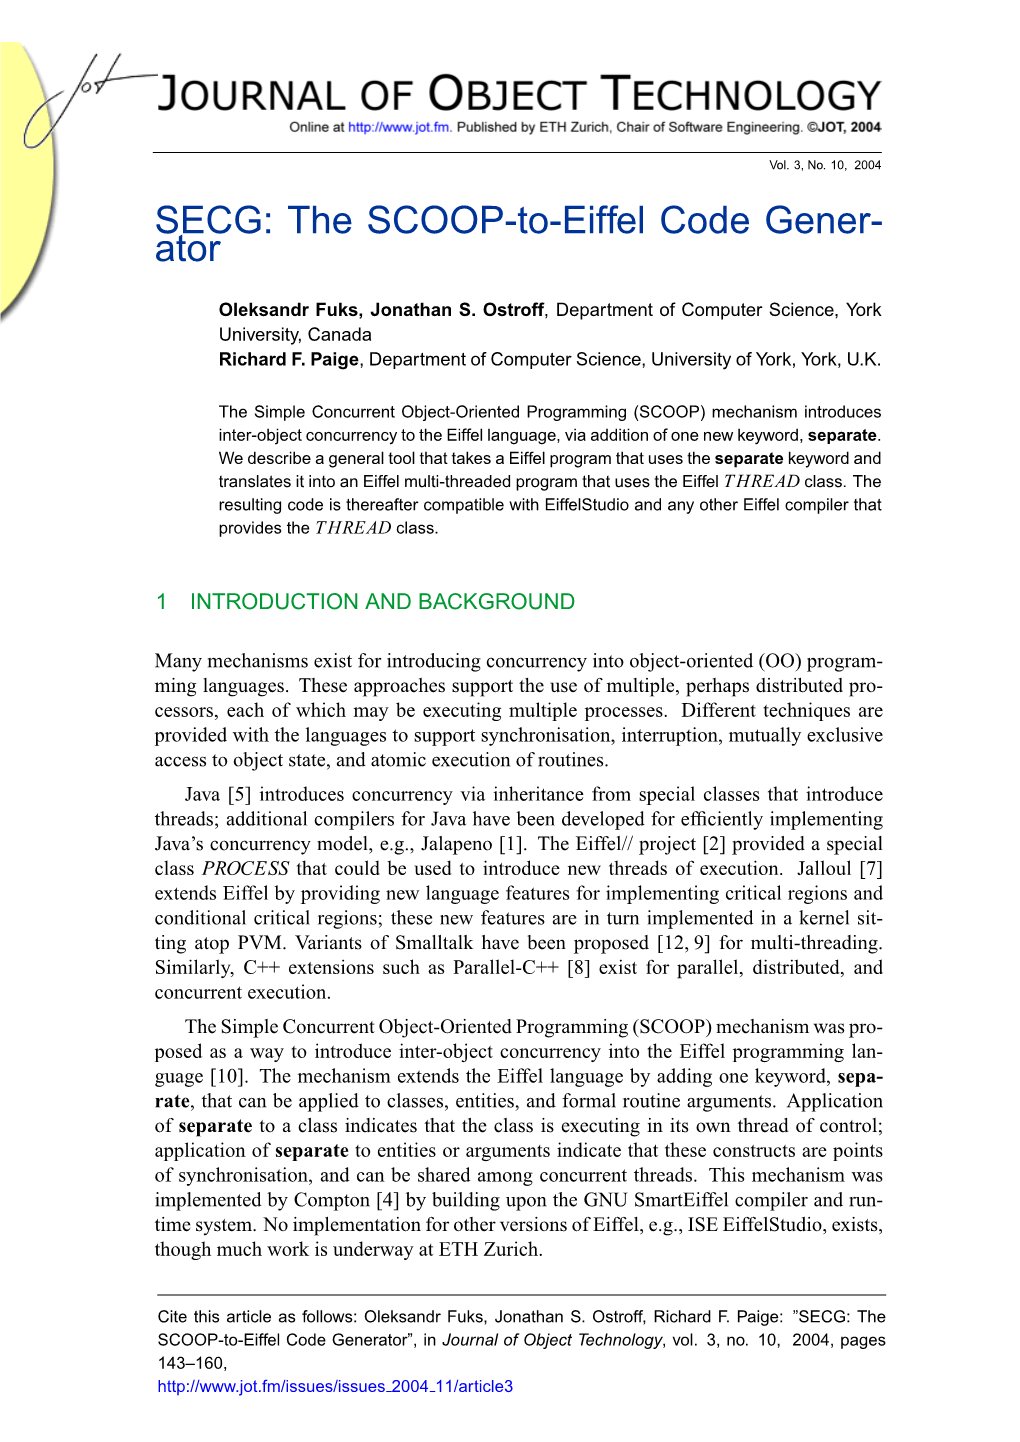 SECG: the SCOOP-To-Eiffel Code Gener- Ator